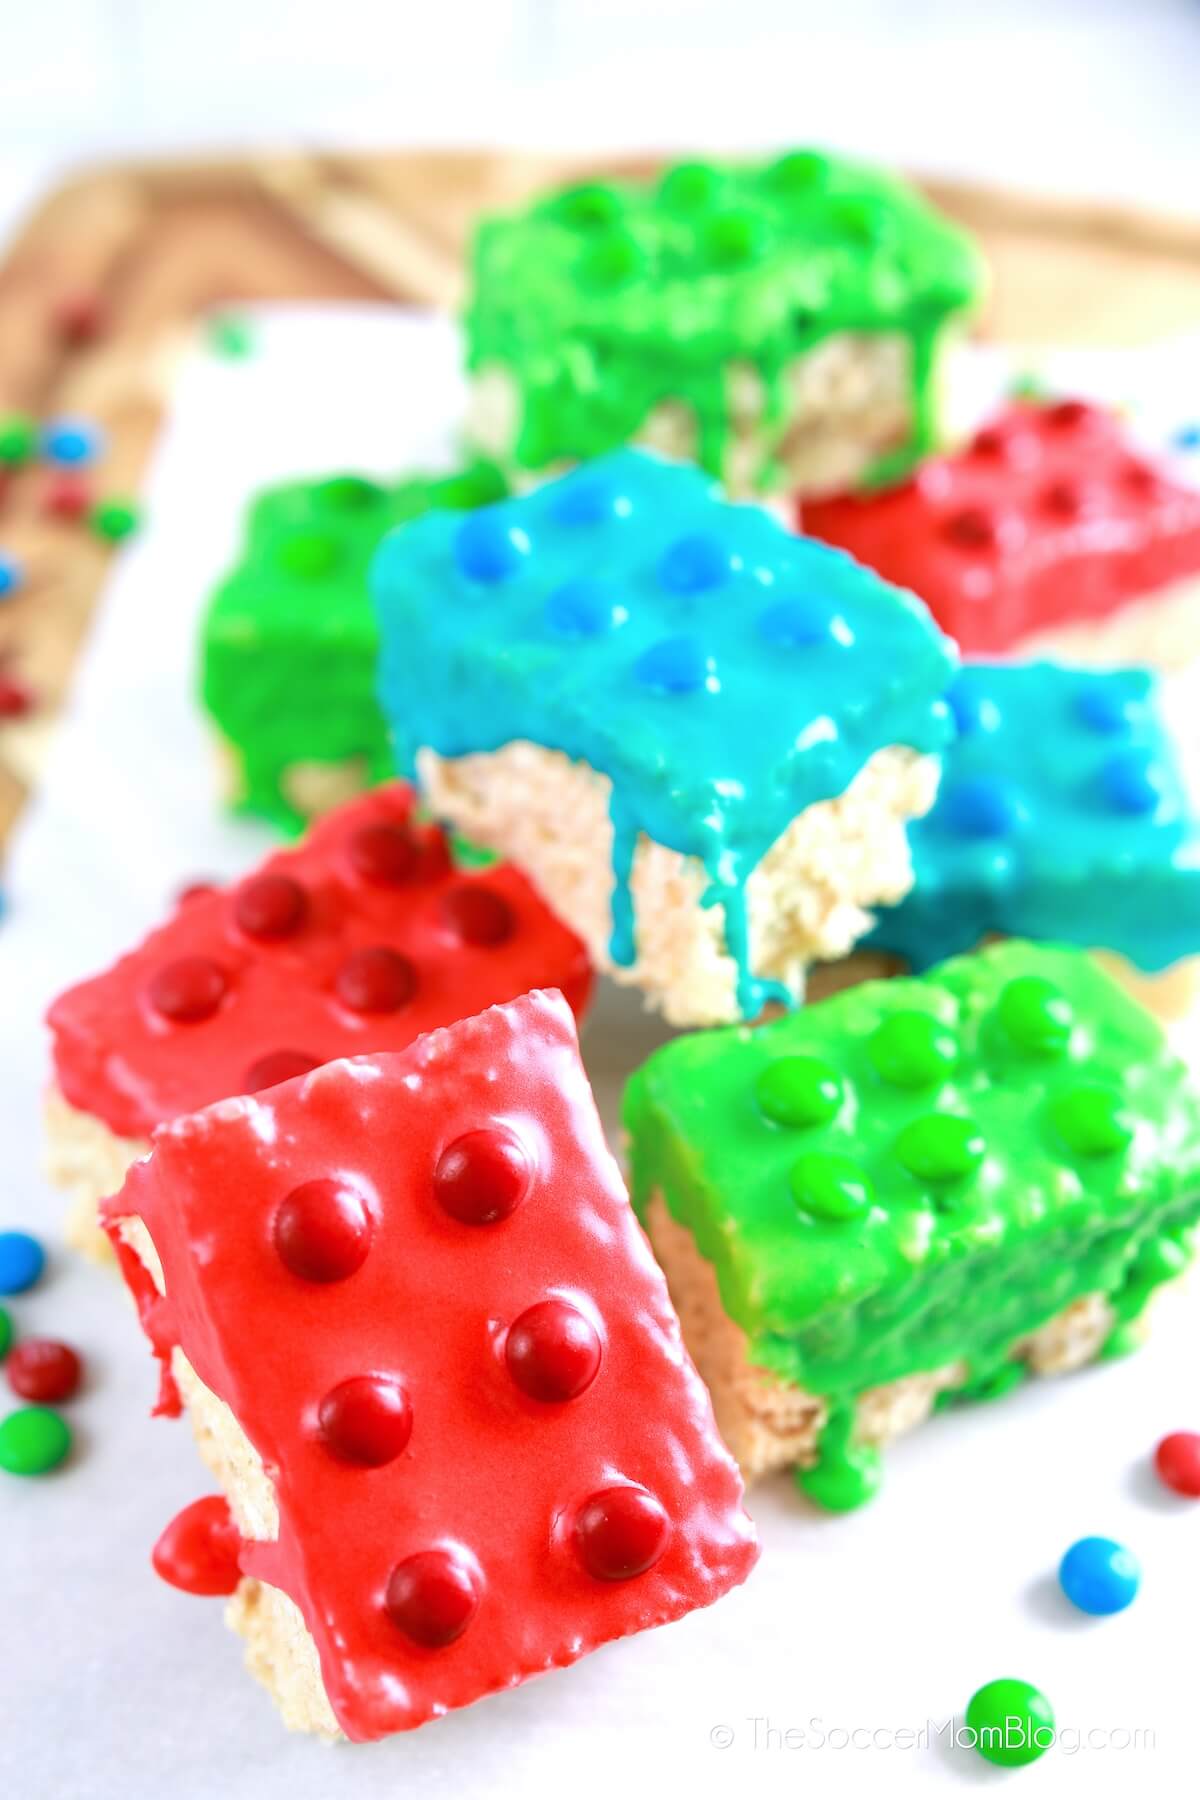 rice krispies treats decorated to look like LEGO bricks